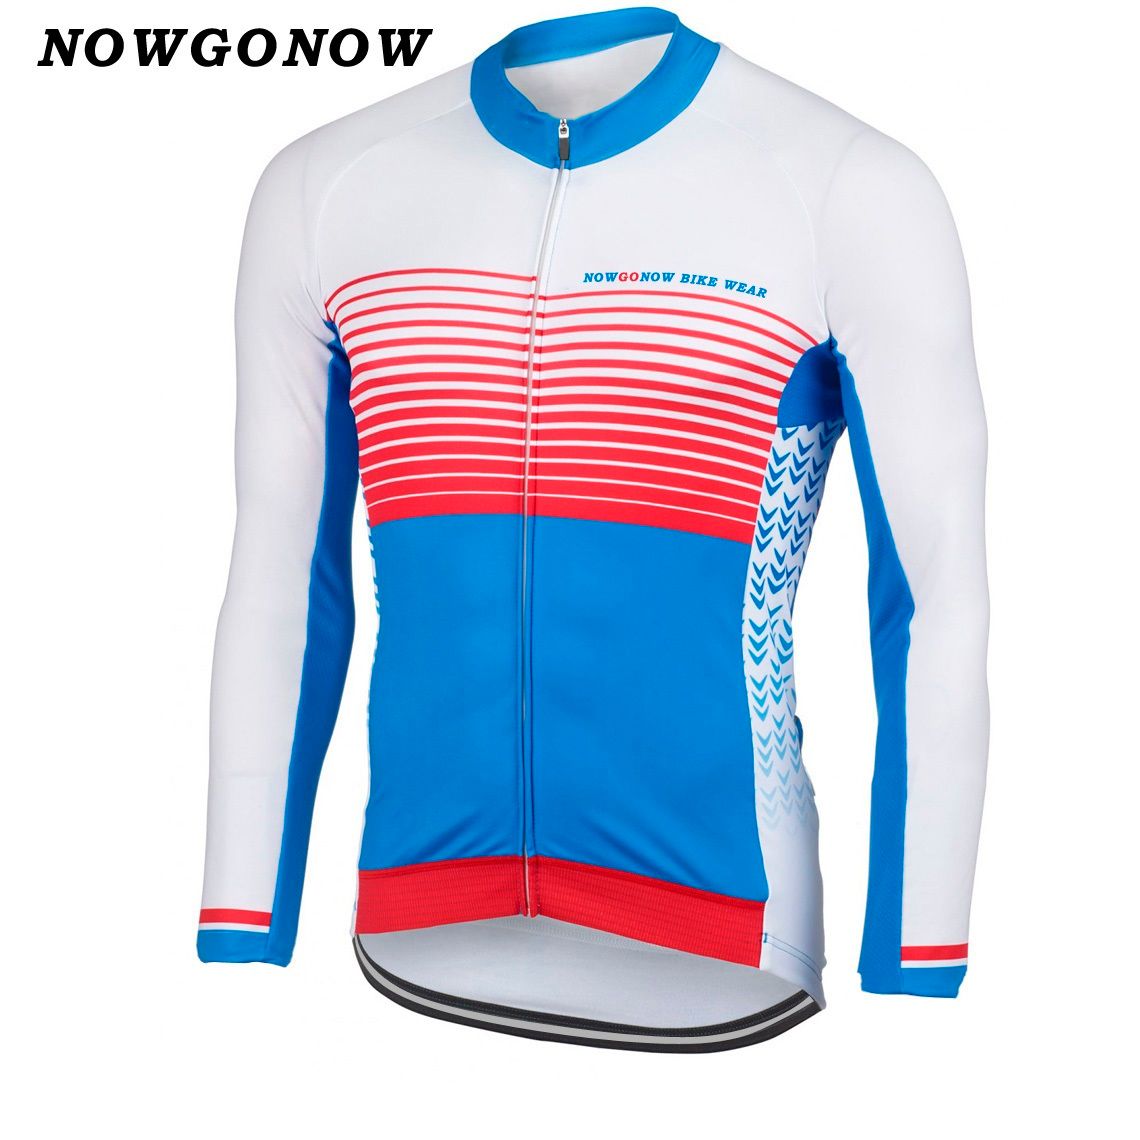 새로운 핫 2017 자전거 저지 의류 긴 소매 빨간색 파란색 흰색 레트로 팀 자전거 착용 mtb 도로 bicyle 사이클 maillot ciclismo 여름 NOWGONOW